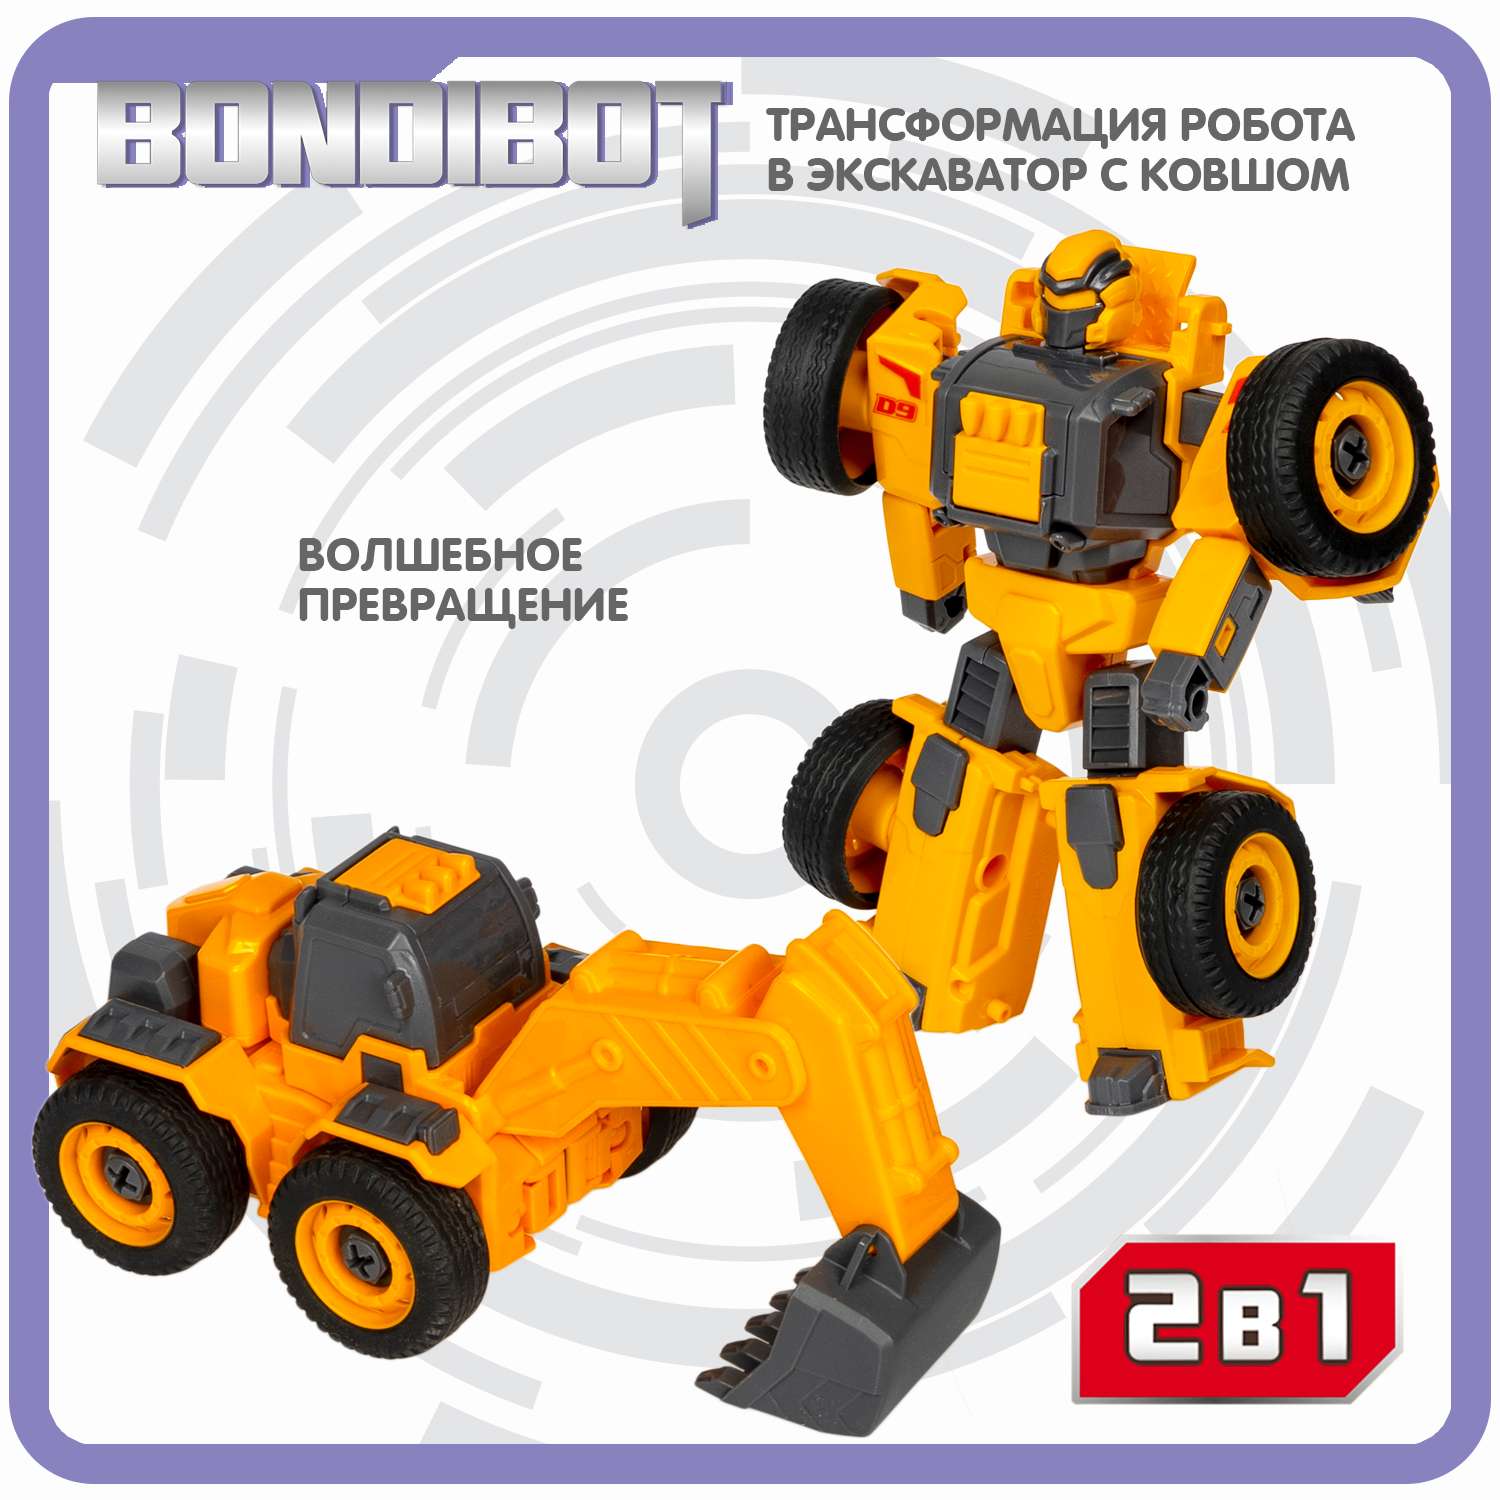 Трансформер BONDIBON BONDIBOT 2 в 1 Робот-экскаватор c ковшом и отверткой - фото 4